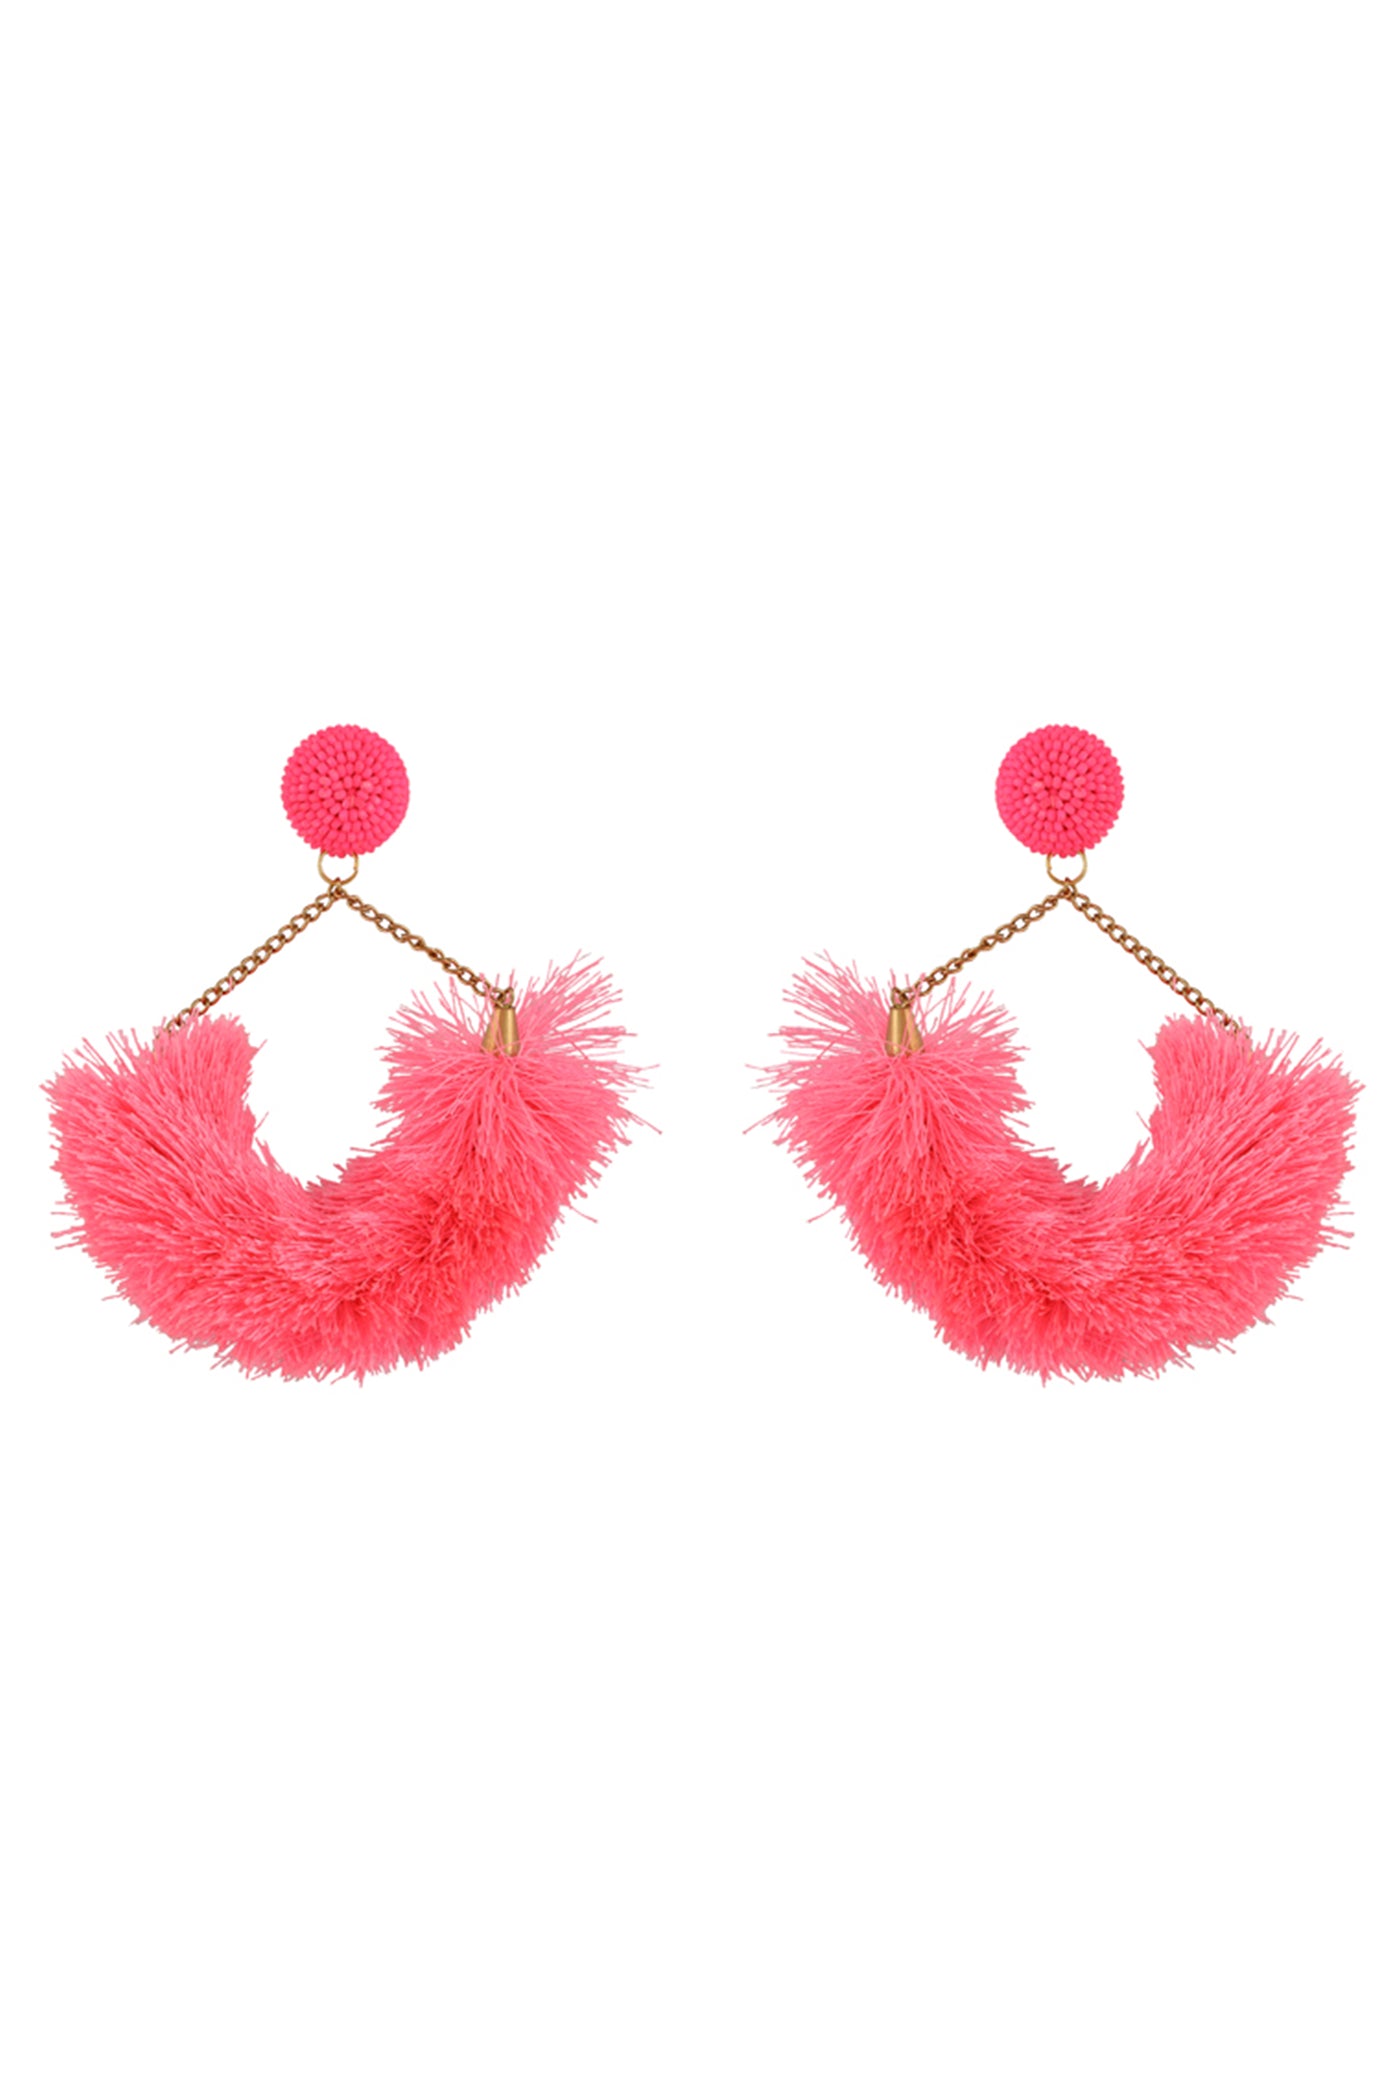 Neon Pink Fluff Statement Earrings